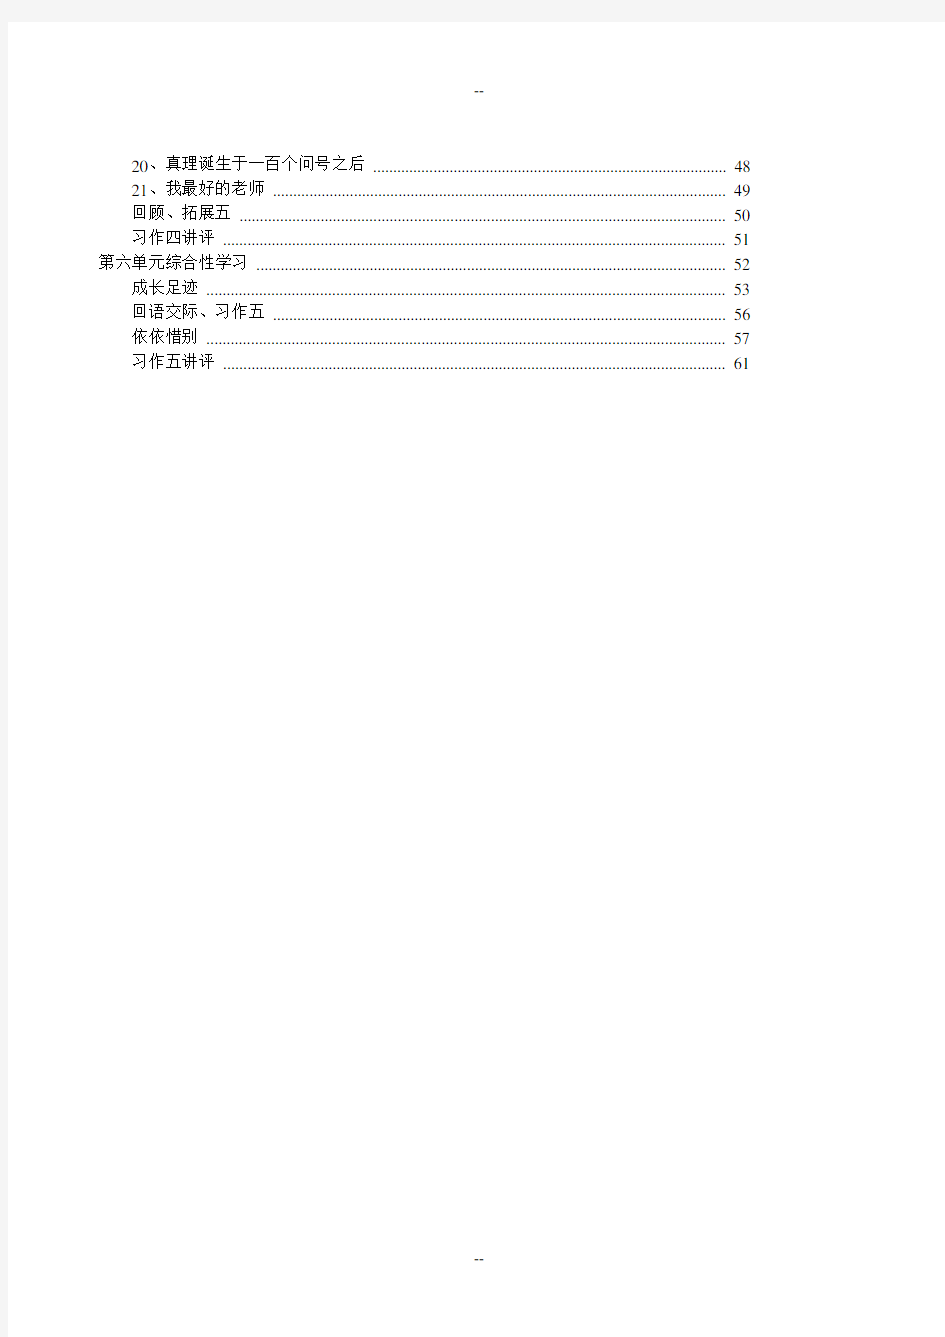 人教版小学语文六年级下册全册教案(表格式)